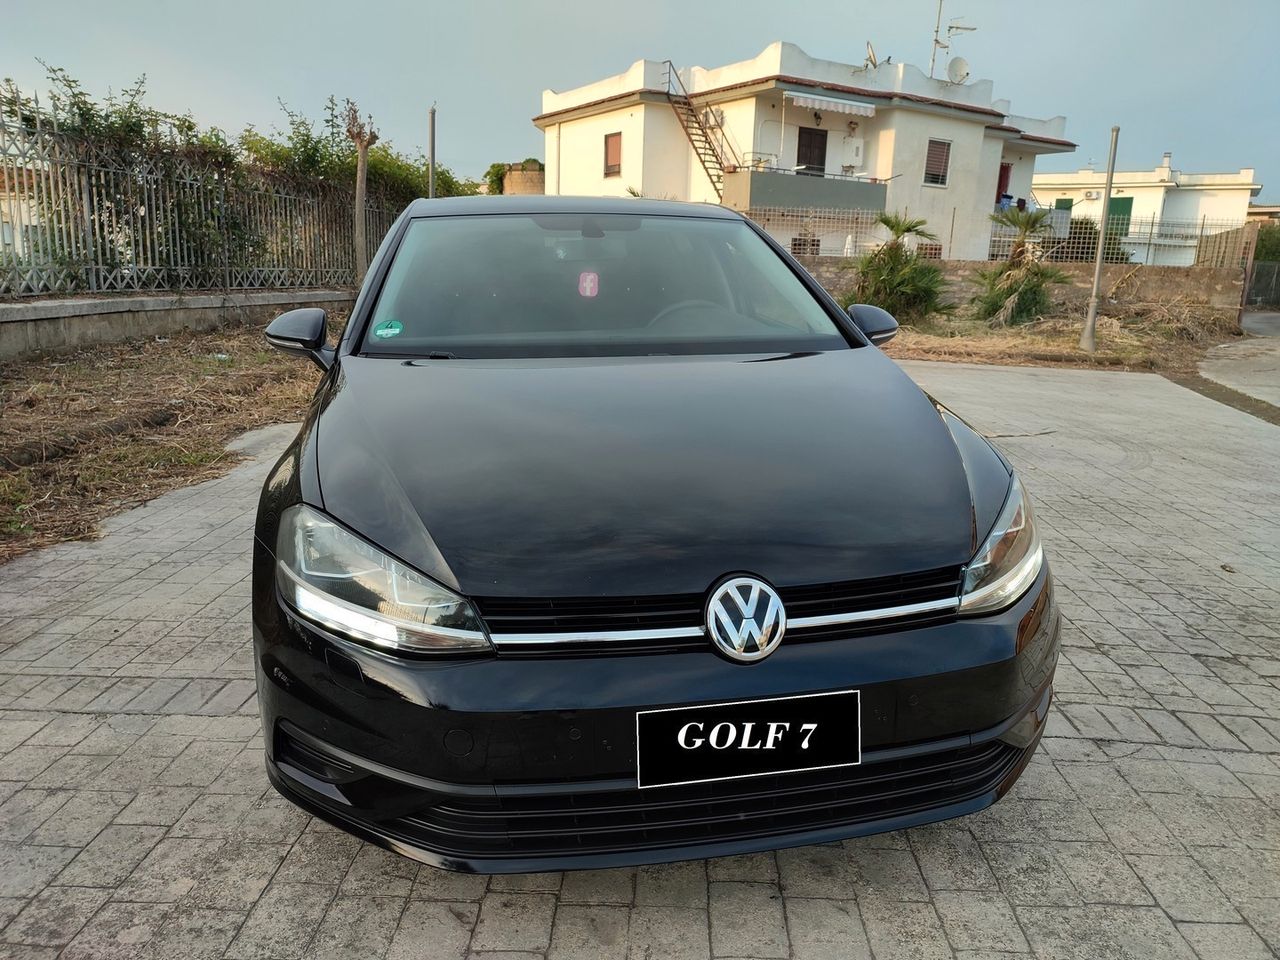 Volkswagen Golf 7 5 PORTE 1.6 TDI 115 CV CERCHI IN LEGA SENS PARK